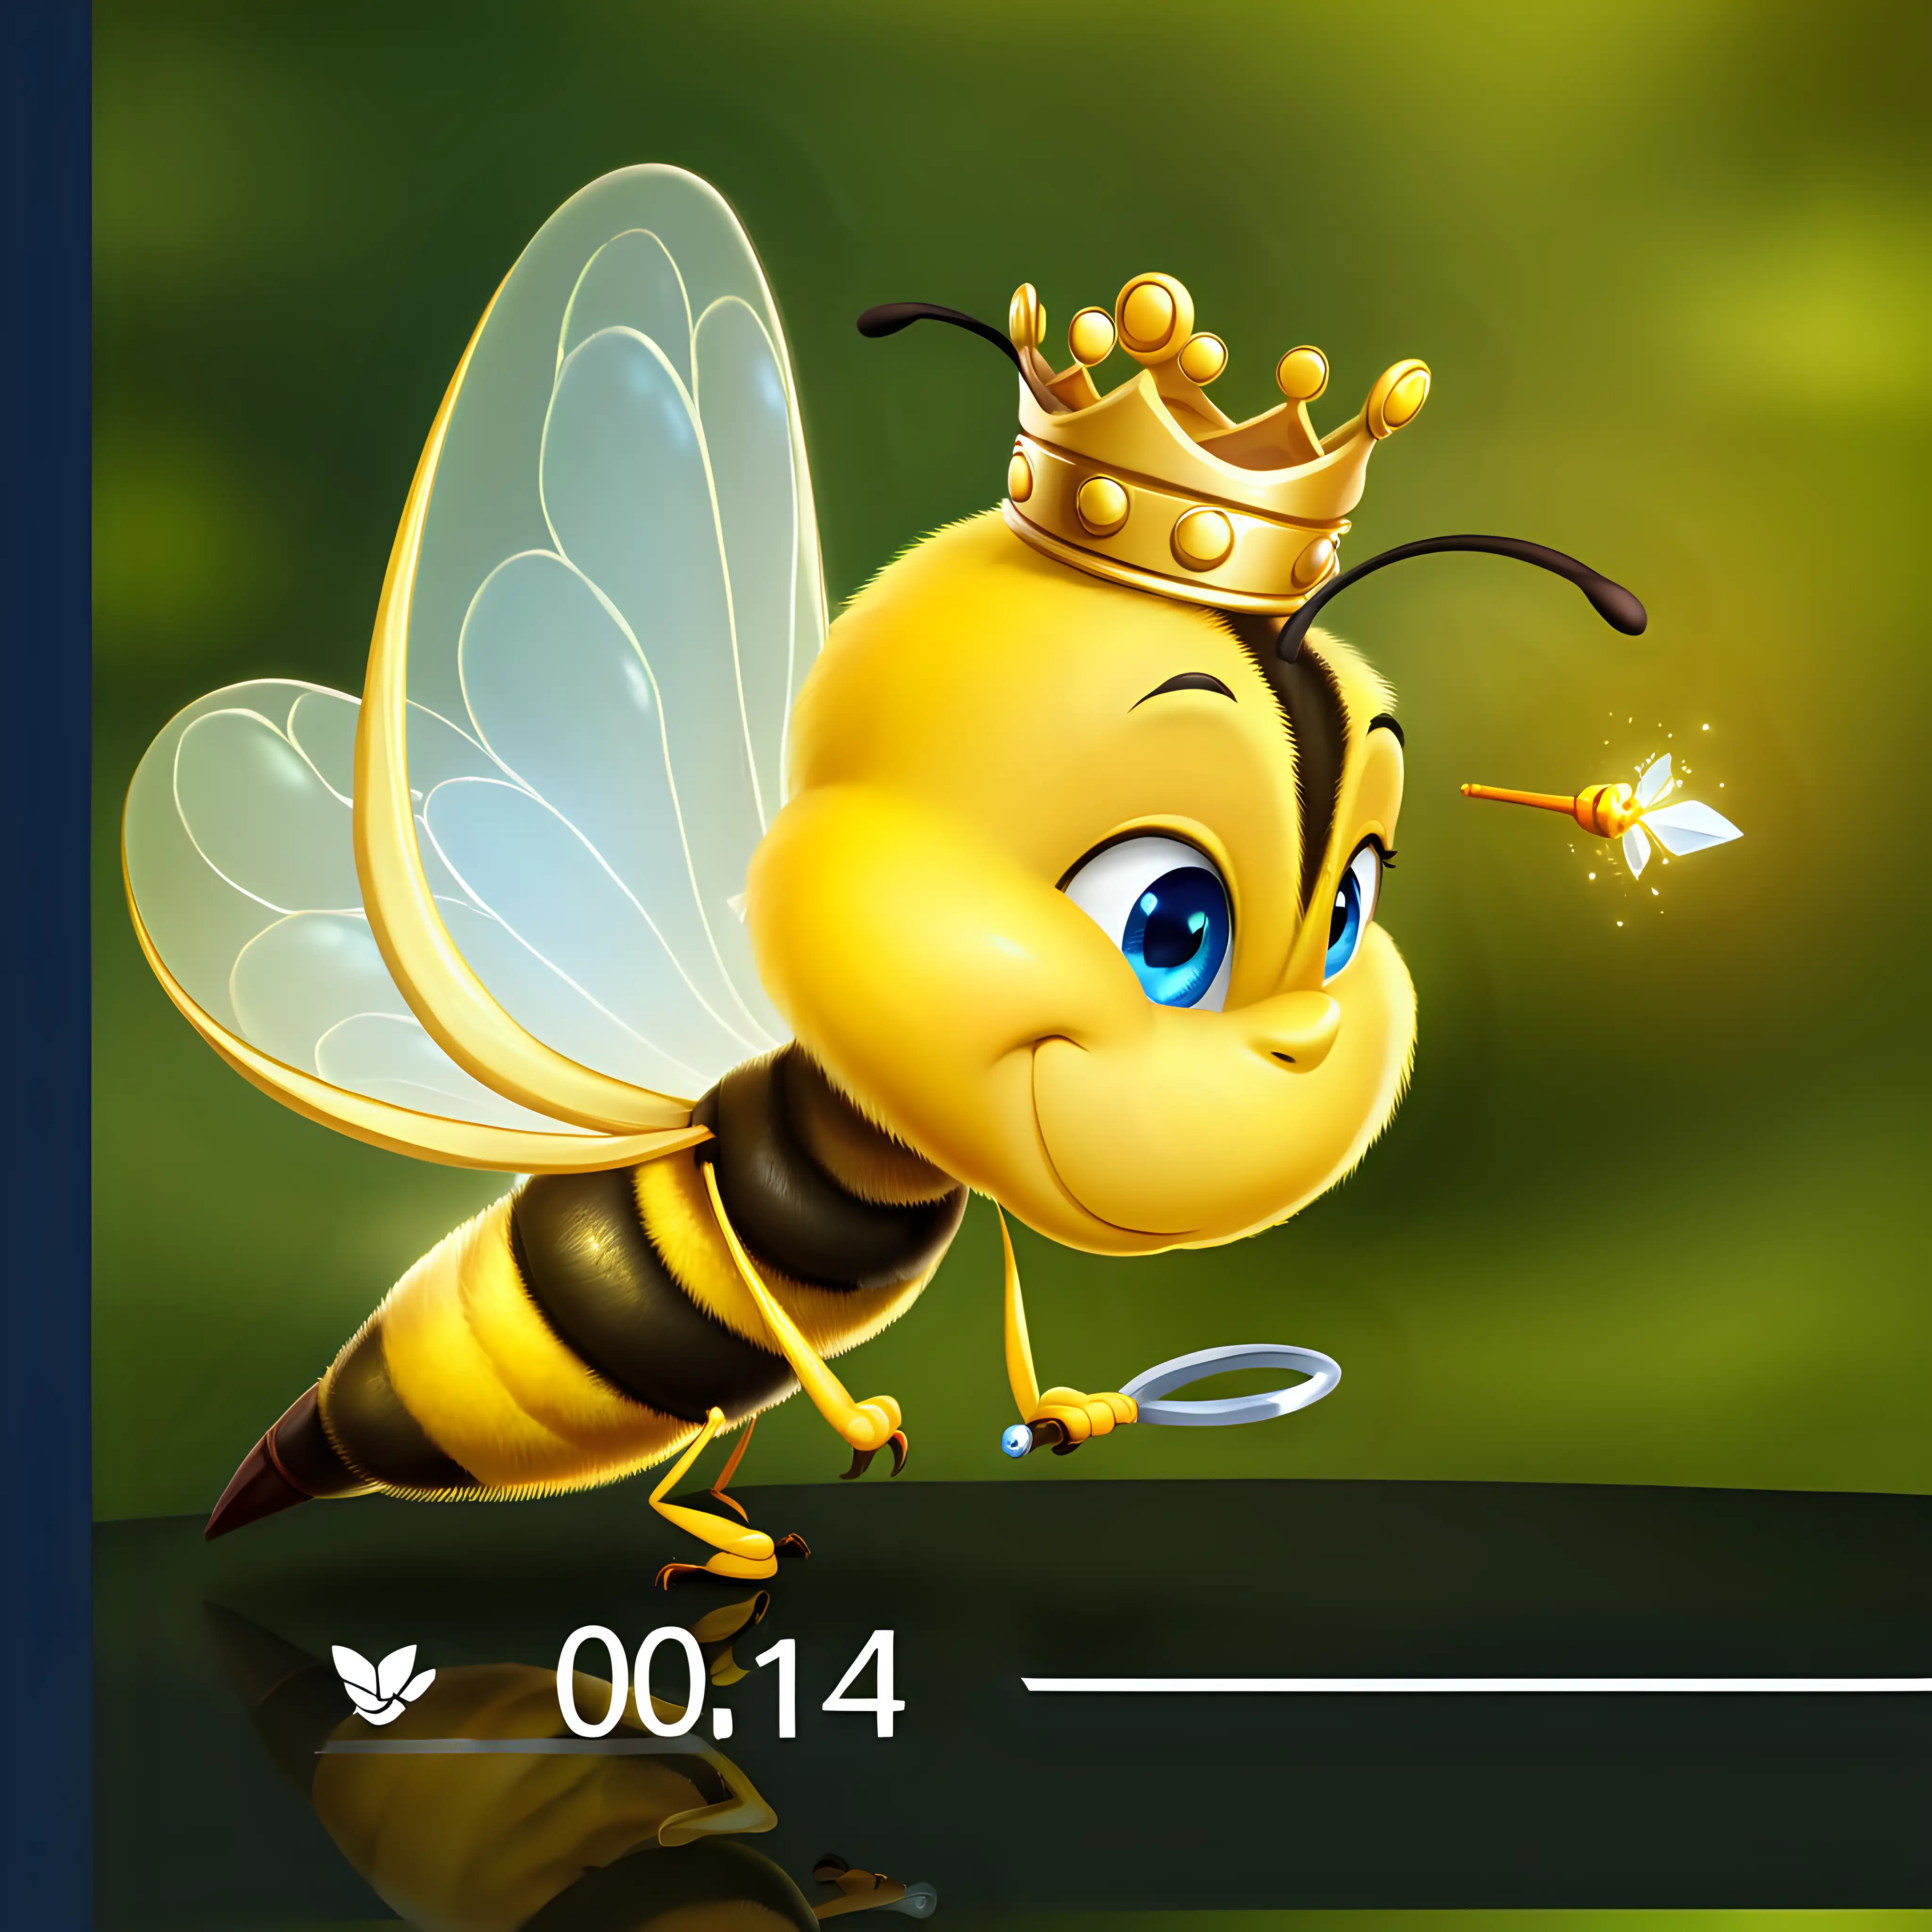 一只可爱的小蜜蜂，微笑着，蓝色的眼睛，煽动着翅膀，戴着皇冠，手握着权杖宝，收起了双腿，侧身准备飞走